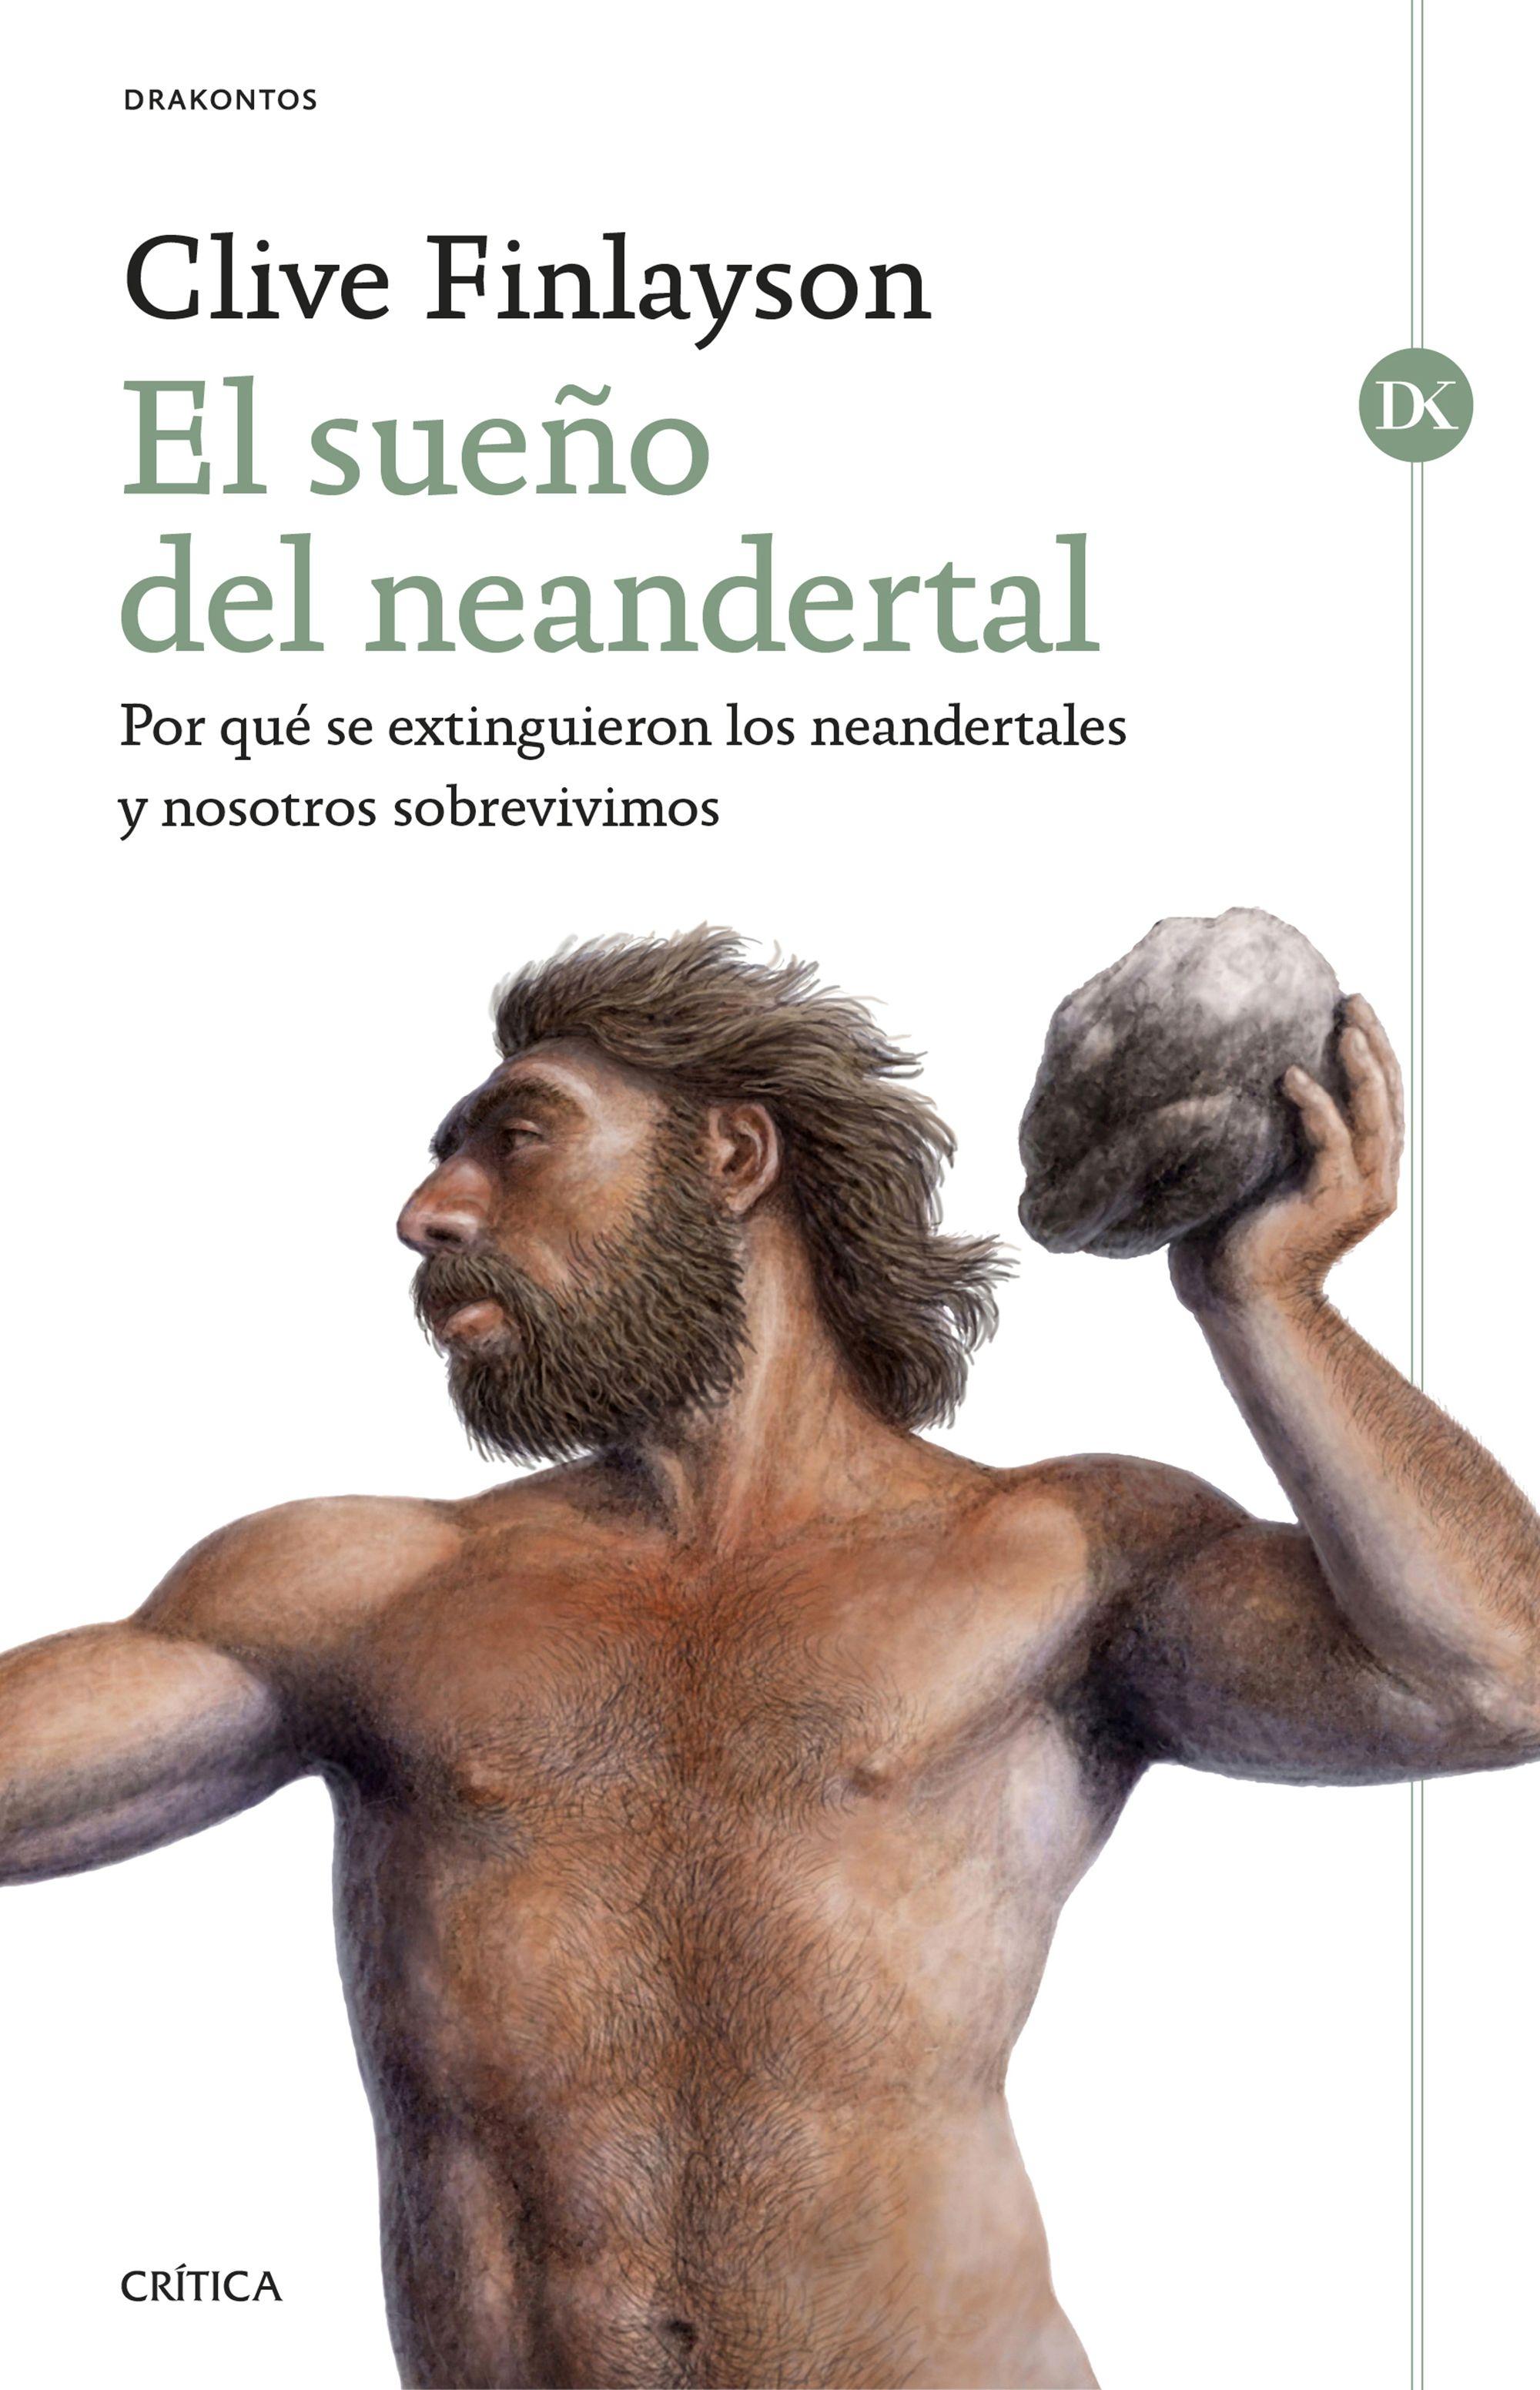 El sueño del neandertal "Por qué se extinguieron los neandertales y nosotros sobrevivimos". 